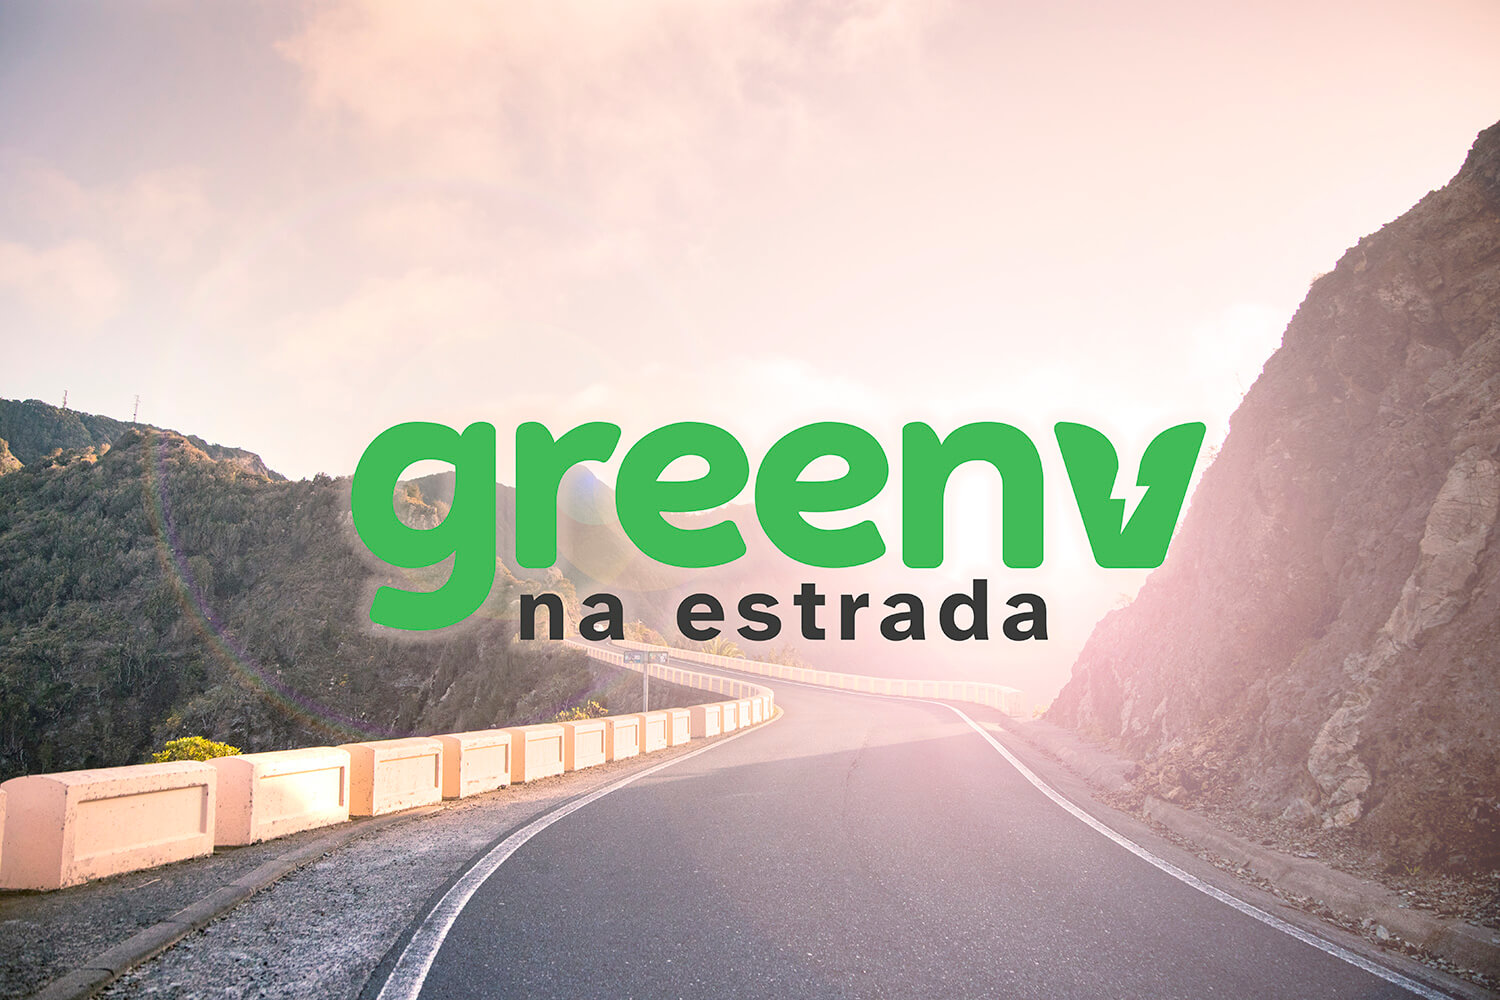 Fotografia colorida mostra uma estrada e no centro da imagem temos os dizeres “GreenV na Estrada”.